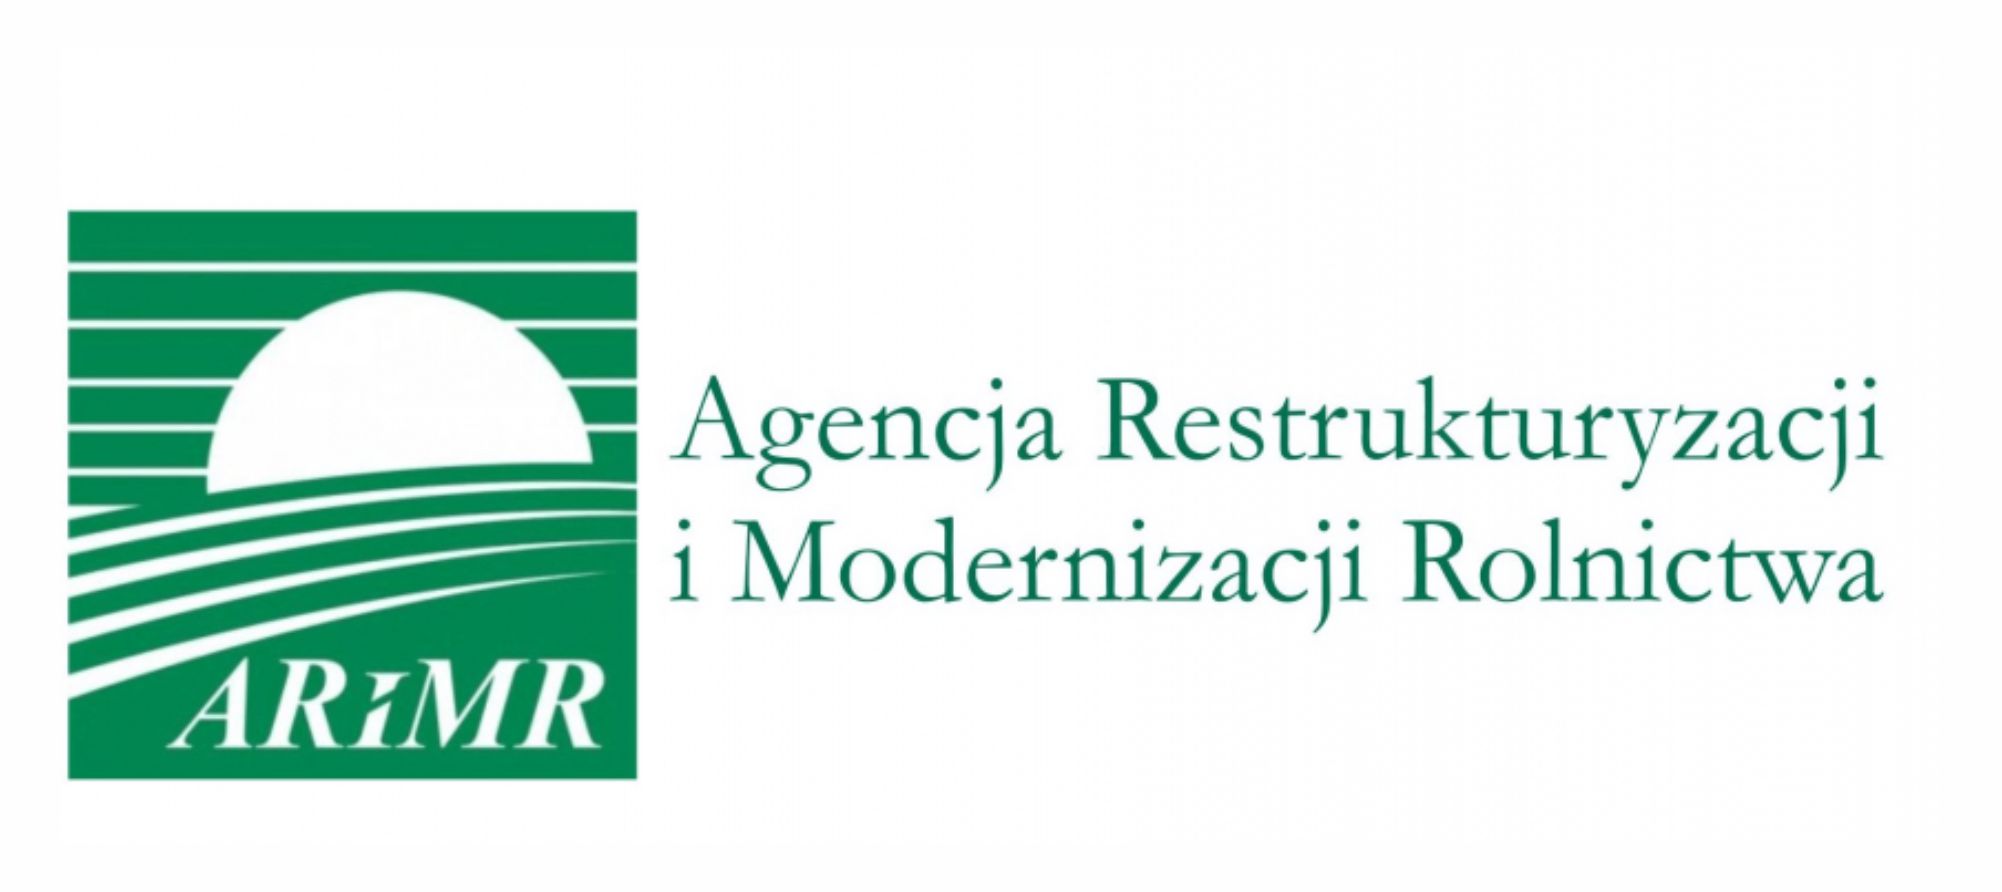 Agencja Restrukturyzacji i Modernizacji Rolnictwa - logo